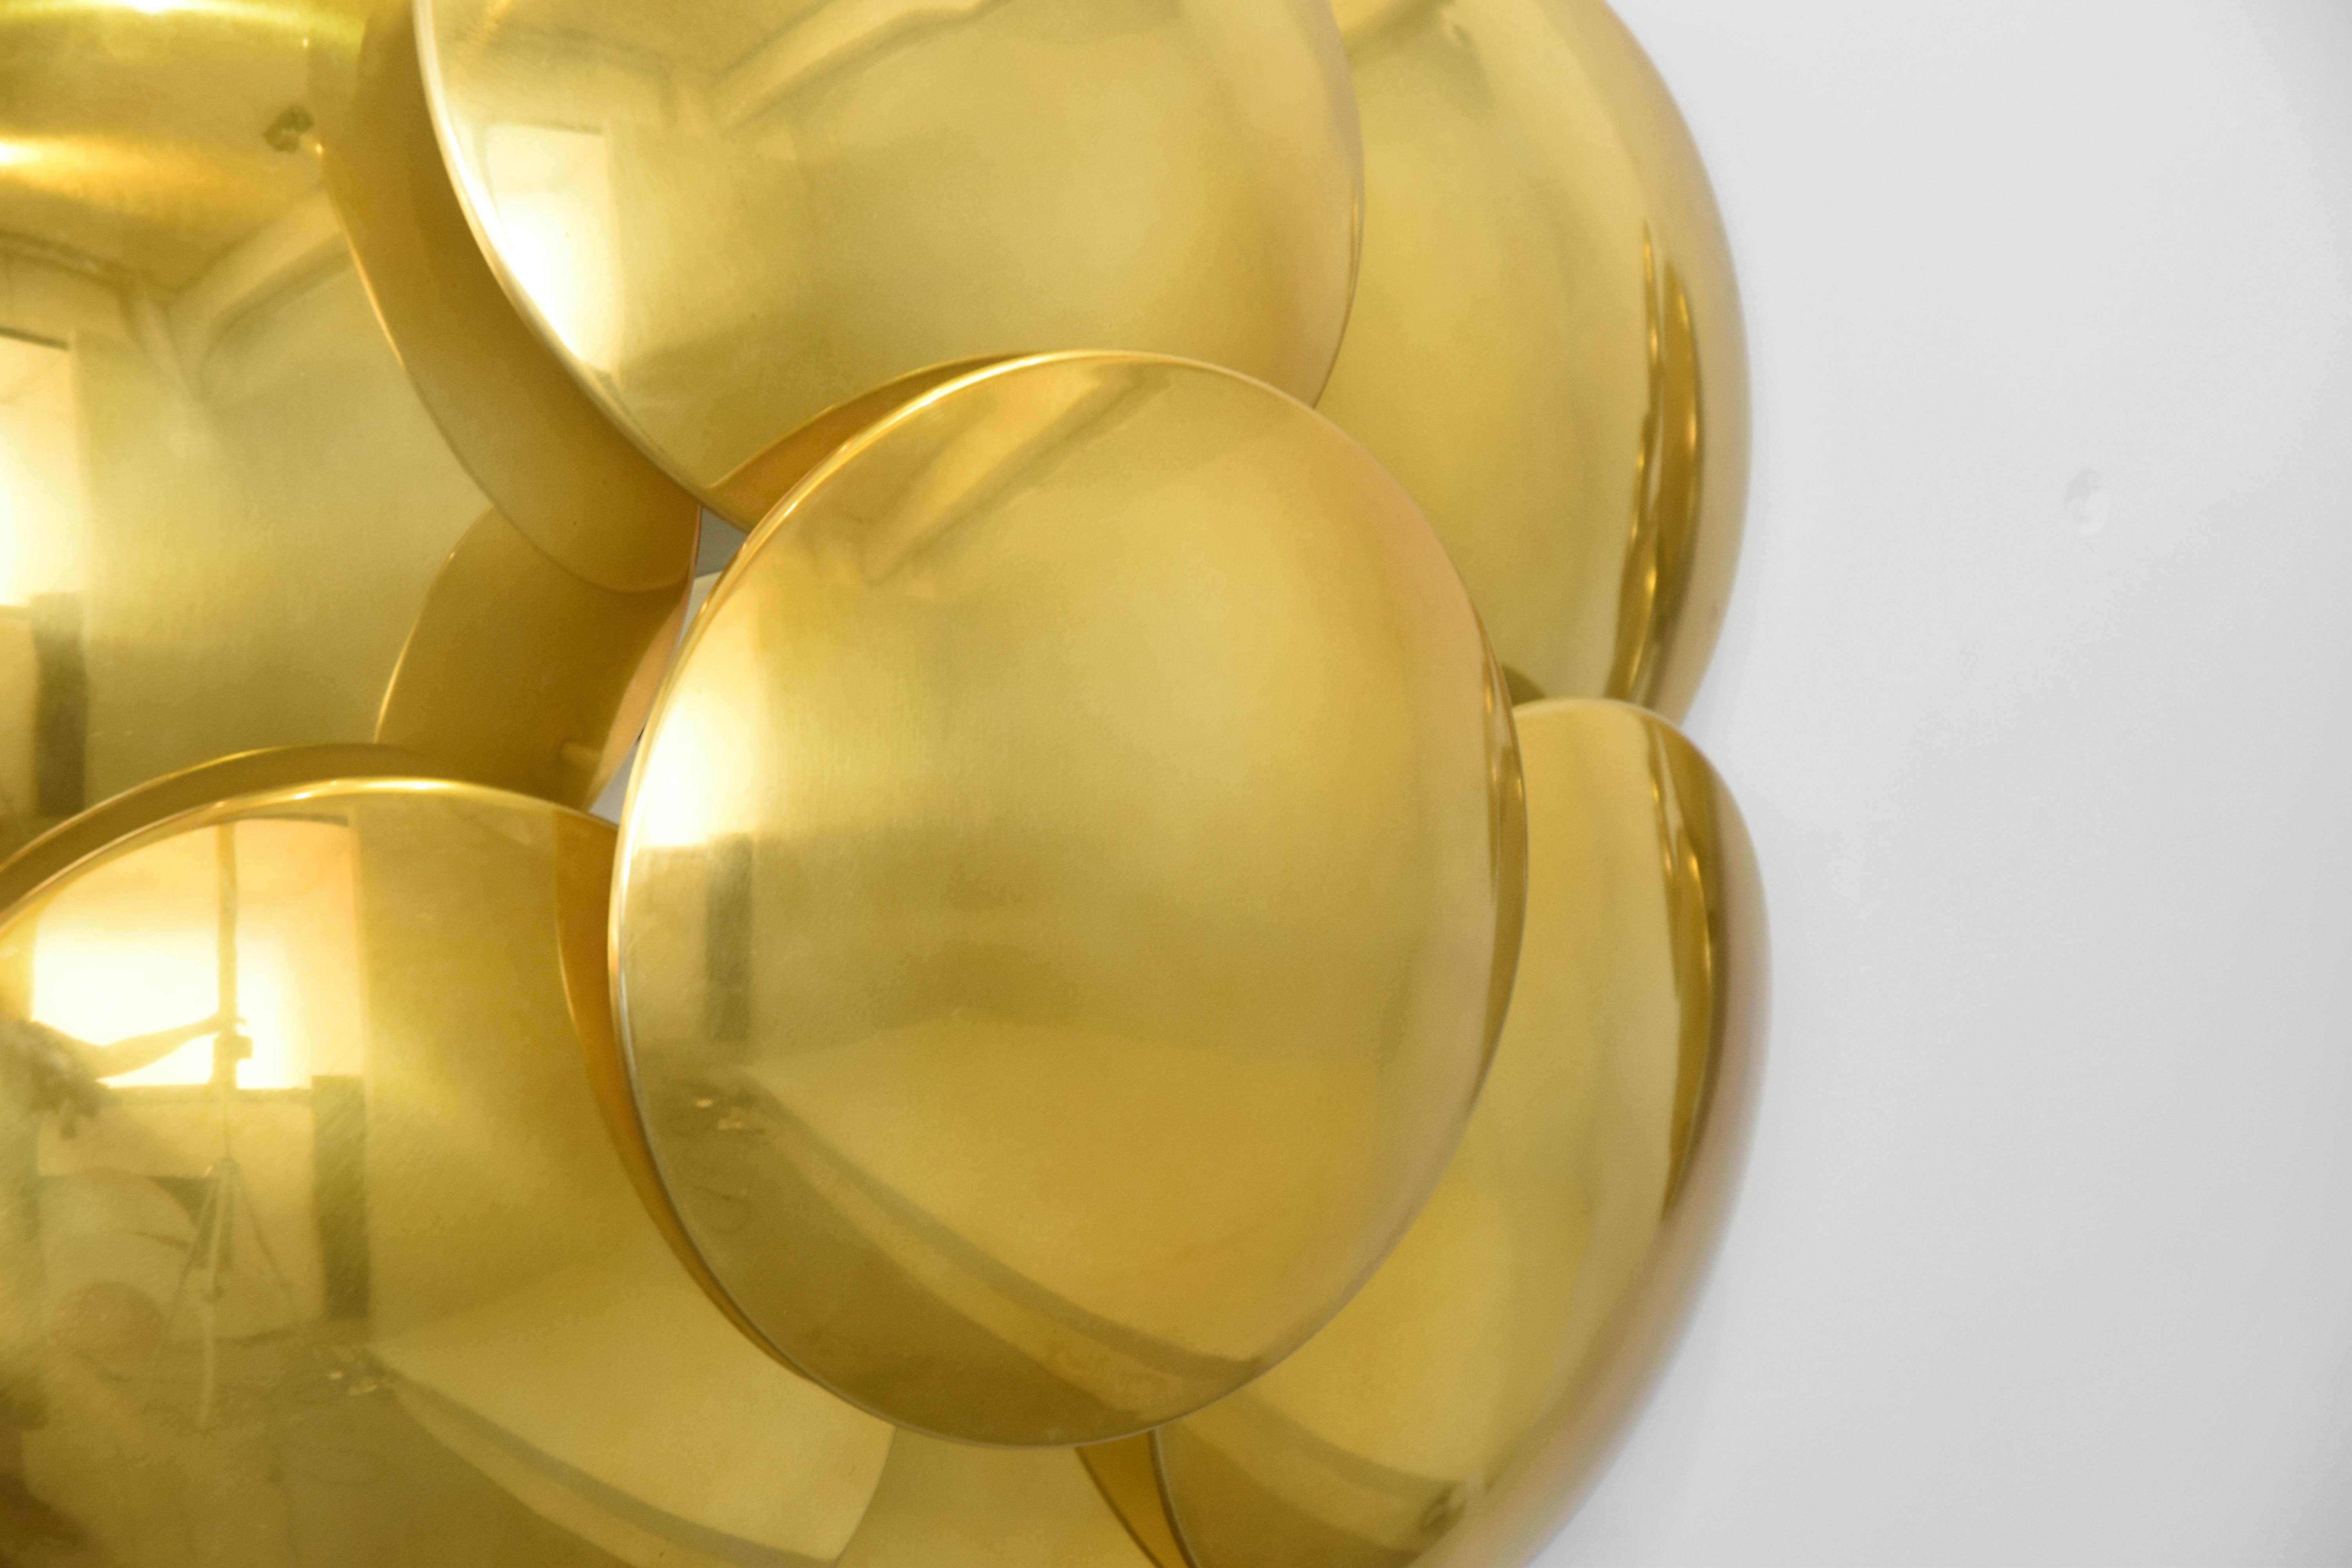 Incroyable paire de lampes murales en métal doré Design Goffredo Reggiani composée de sept disques en aluminium doré.
Très rares appliques murales en parfait état de fonctionnement avec l'étiquette d'origine de l'époque